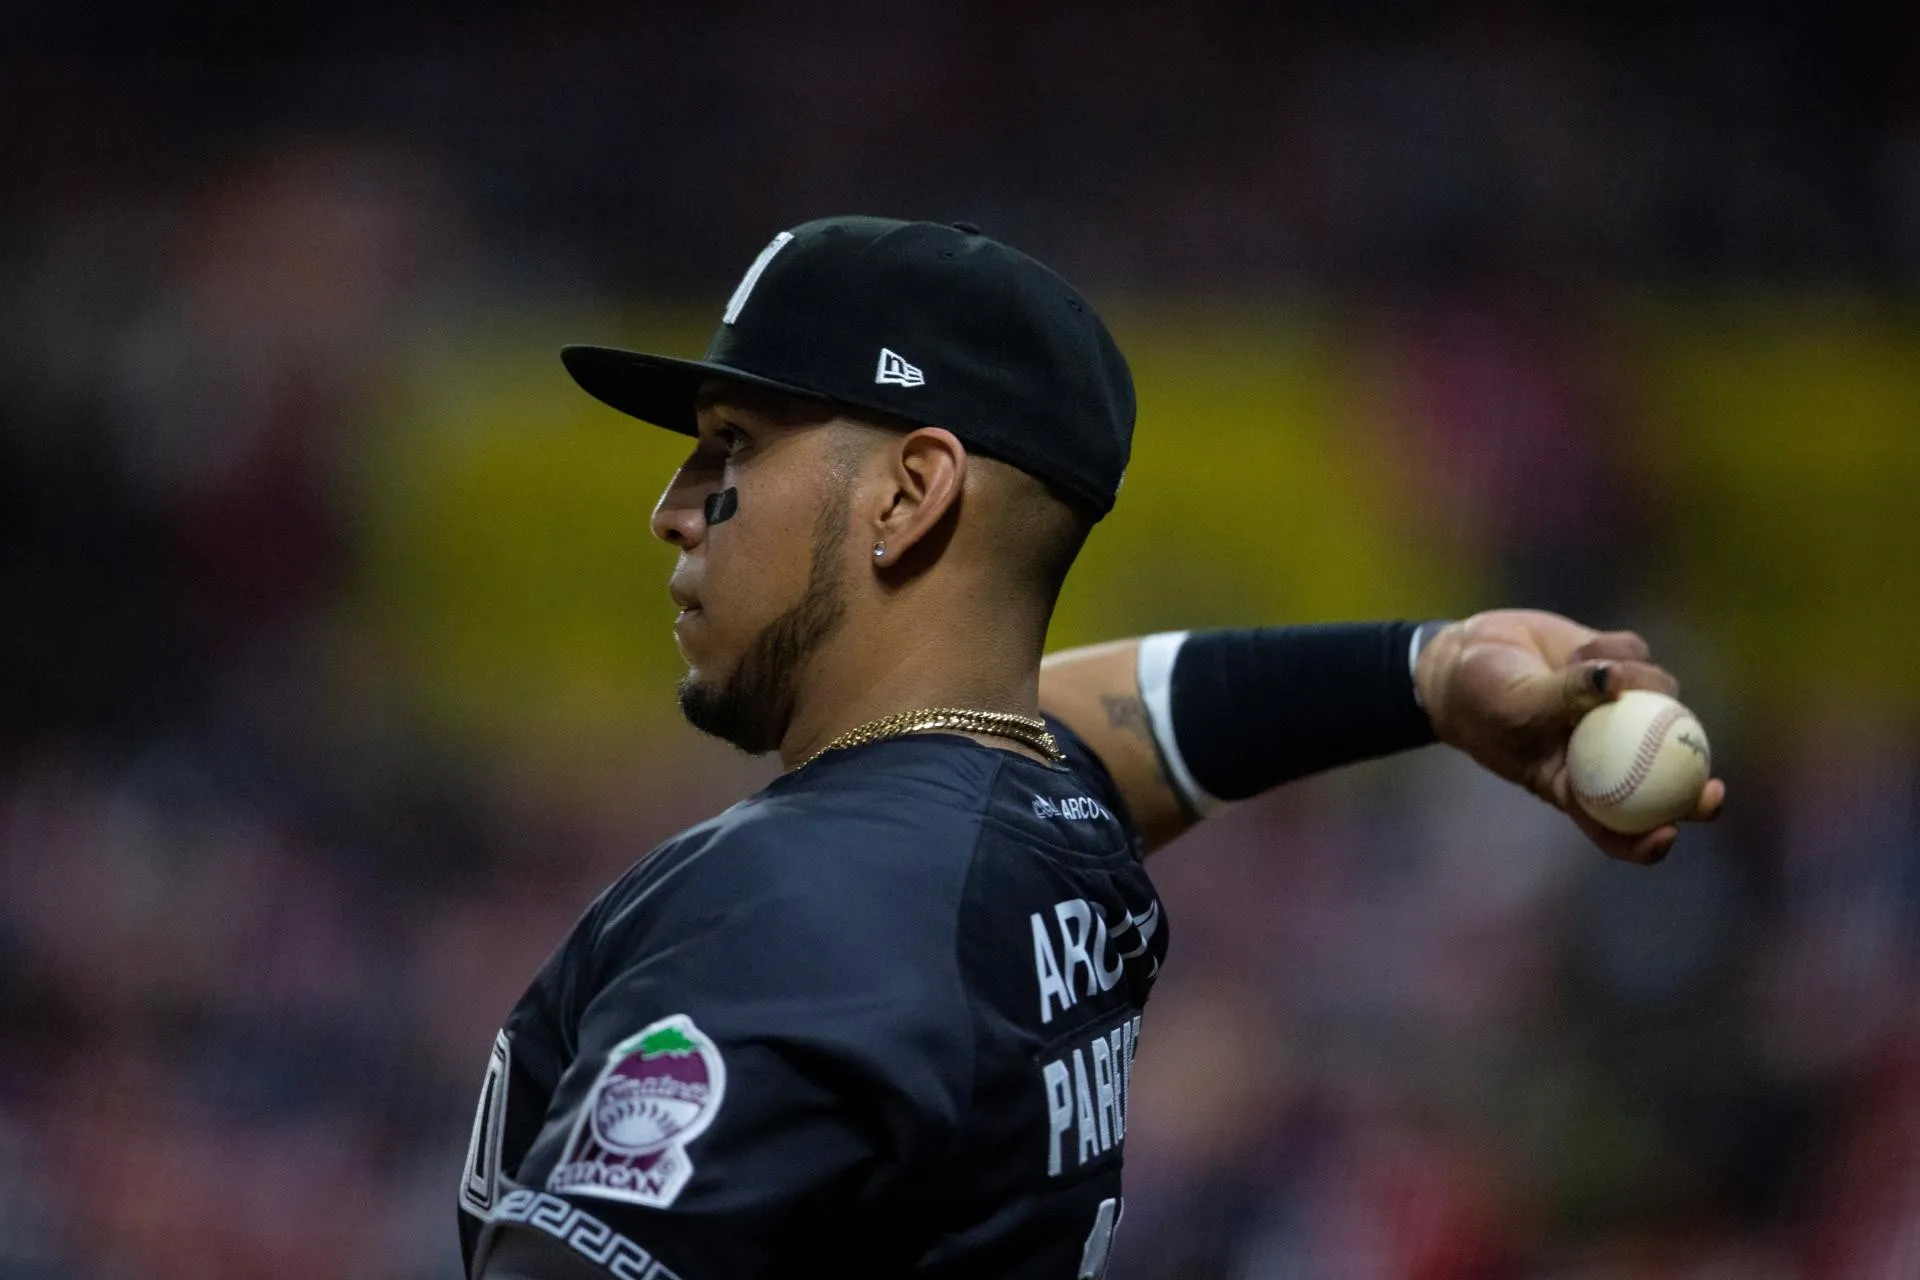 Un mexicano marca el ritmo latino el martes en la MLB